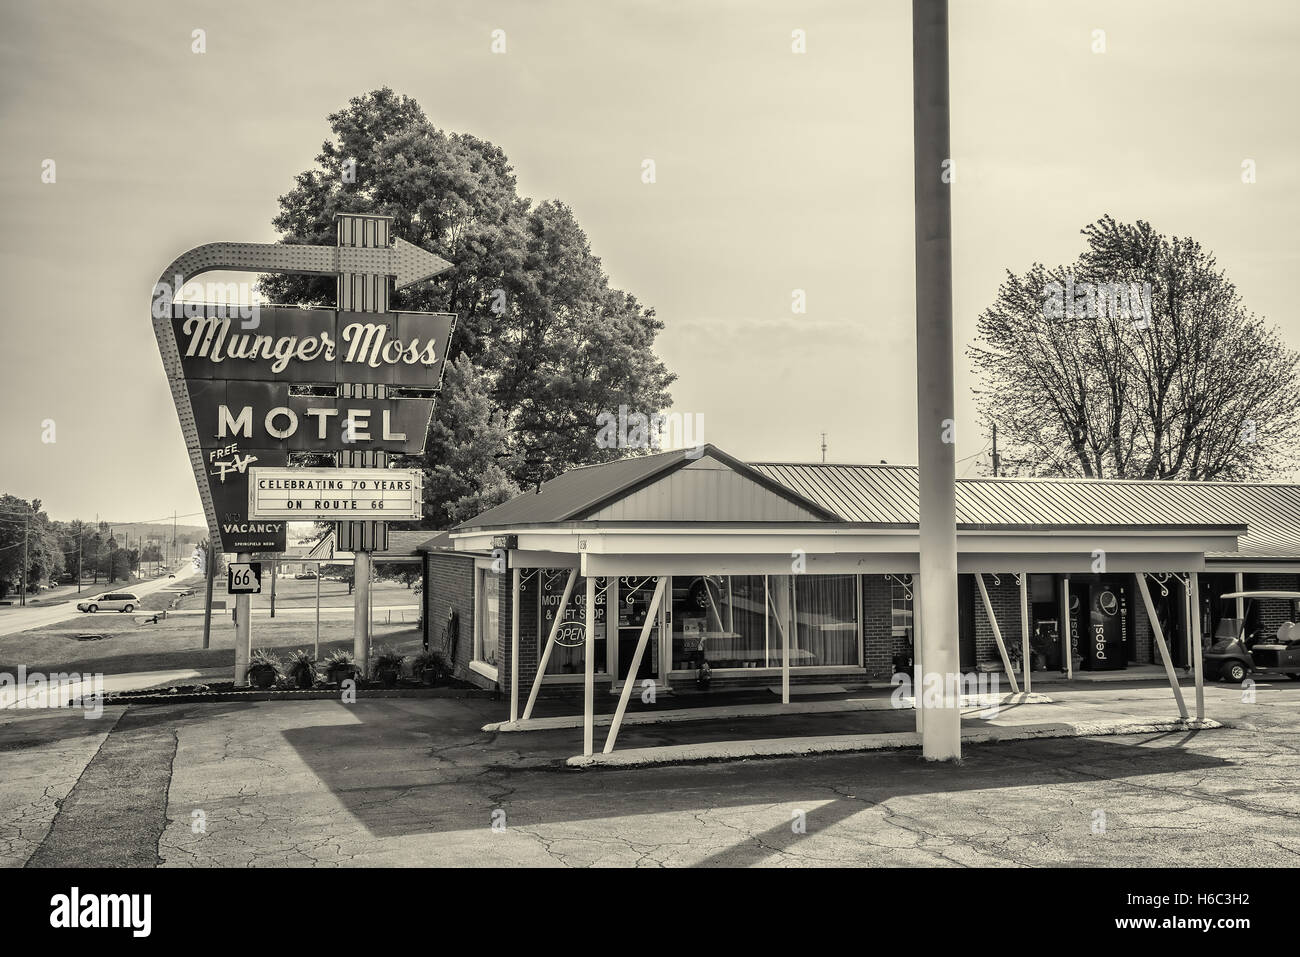 Munger Moss Motel et vintage en néon sur l'historique Route 66 au Missouri Banque D'Images